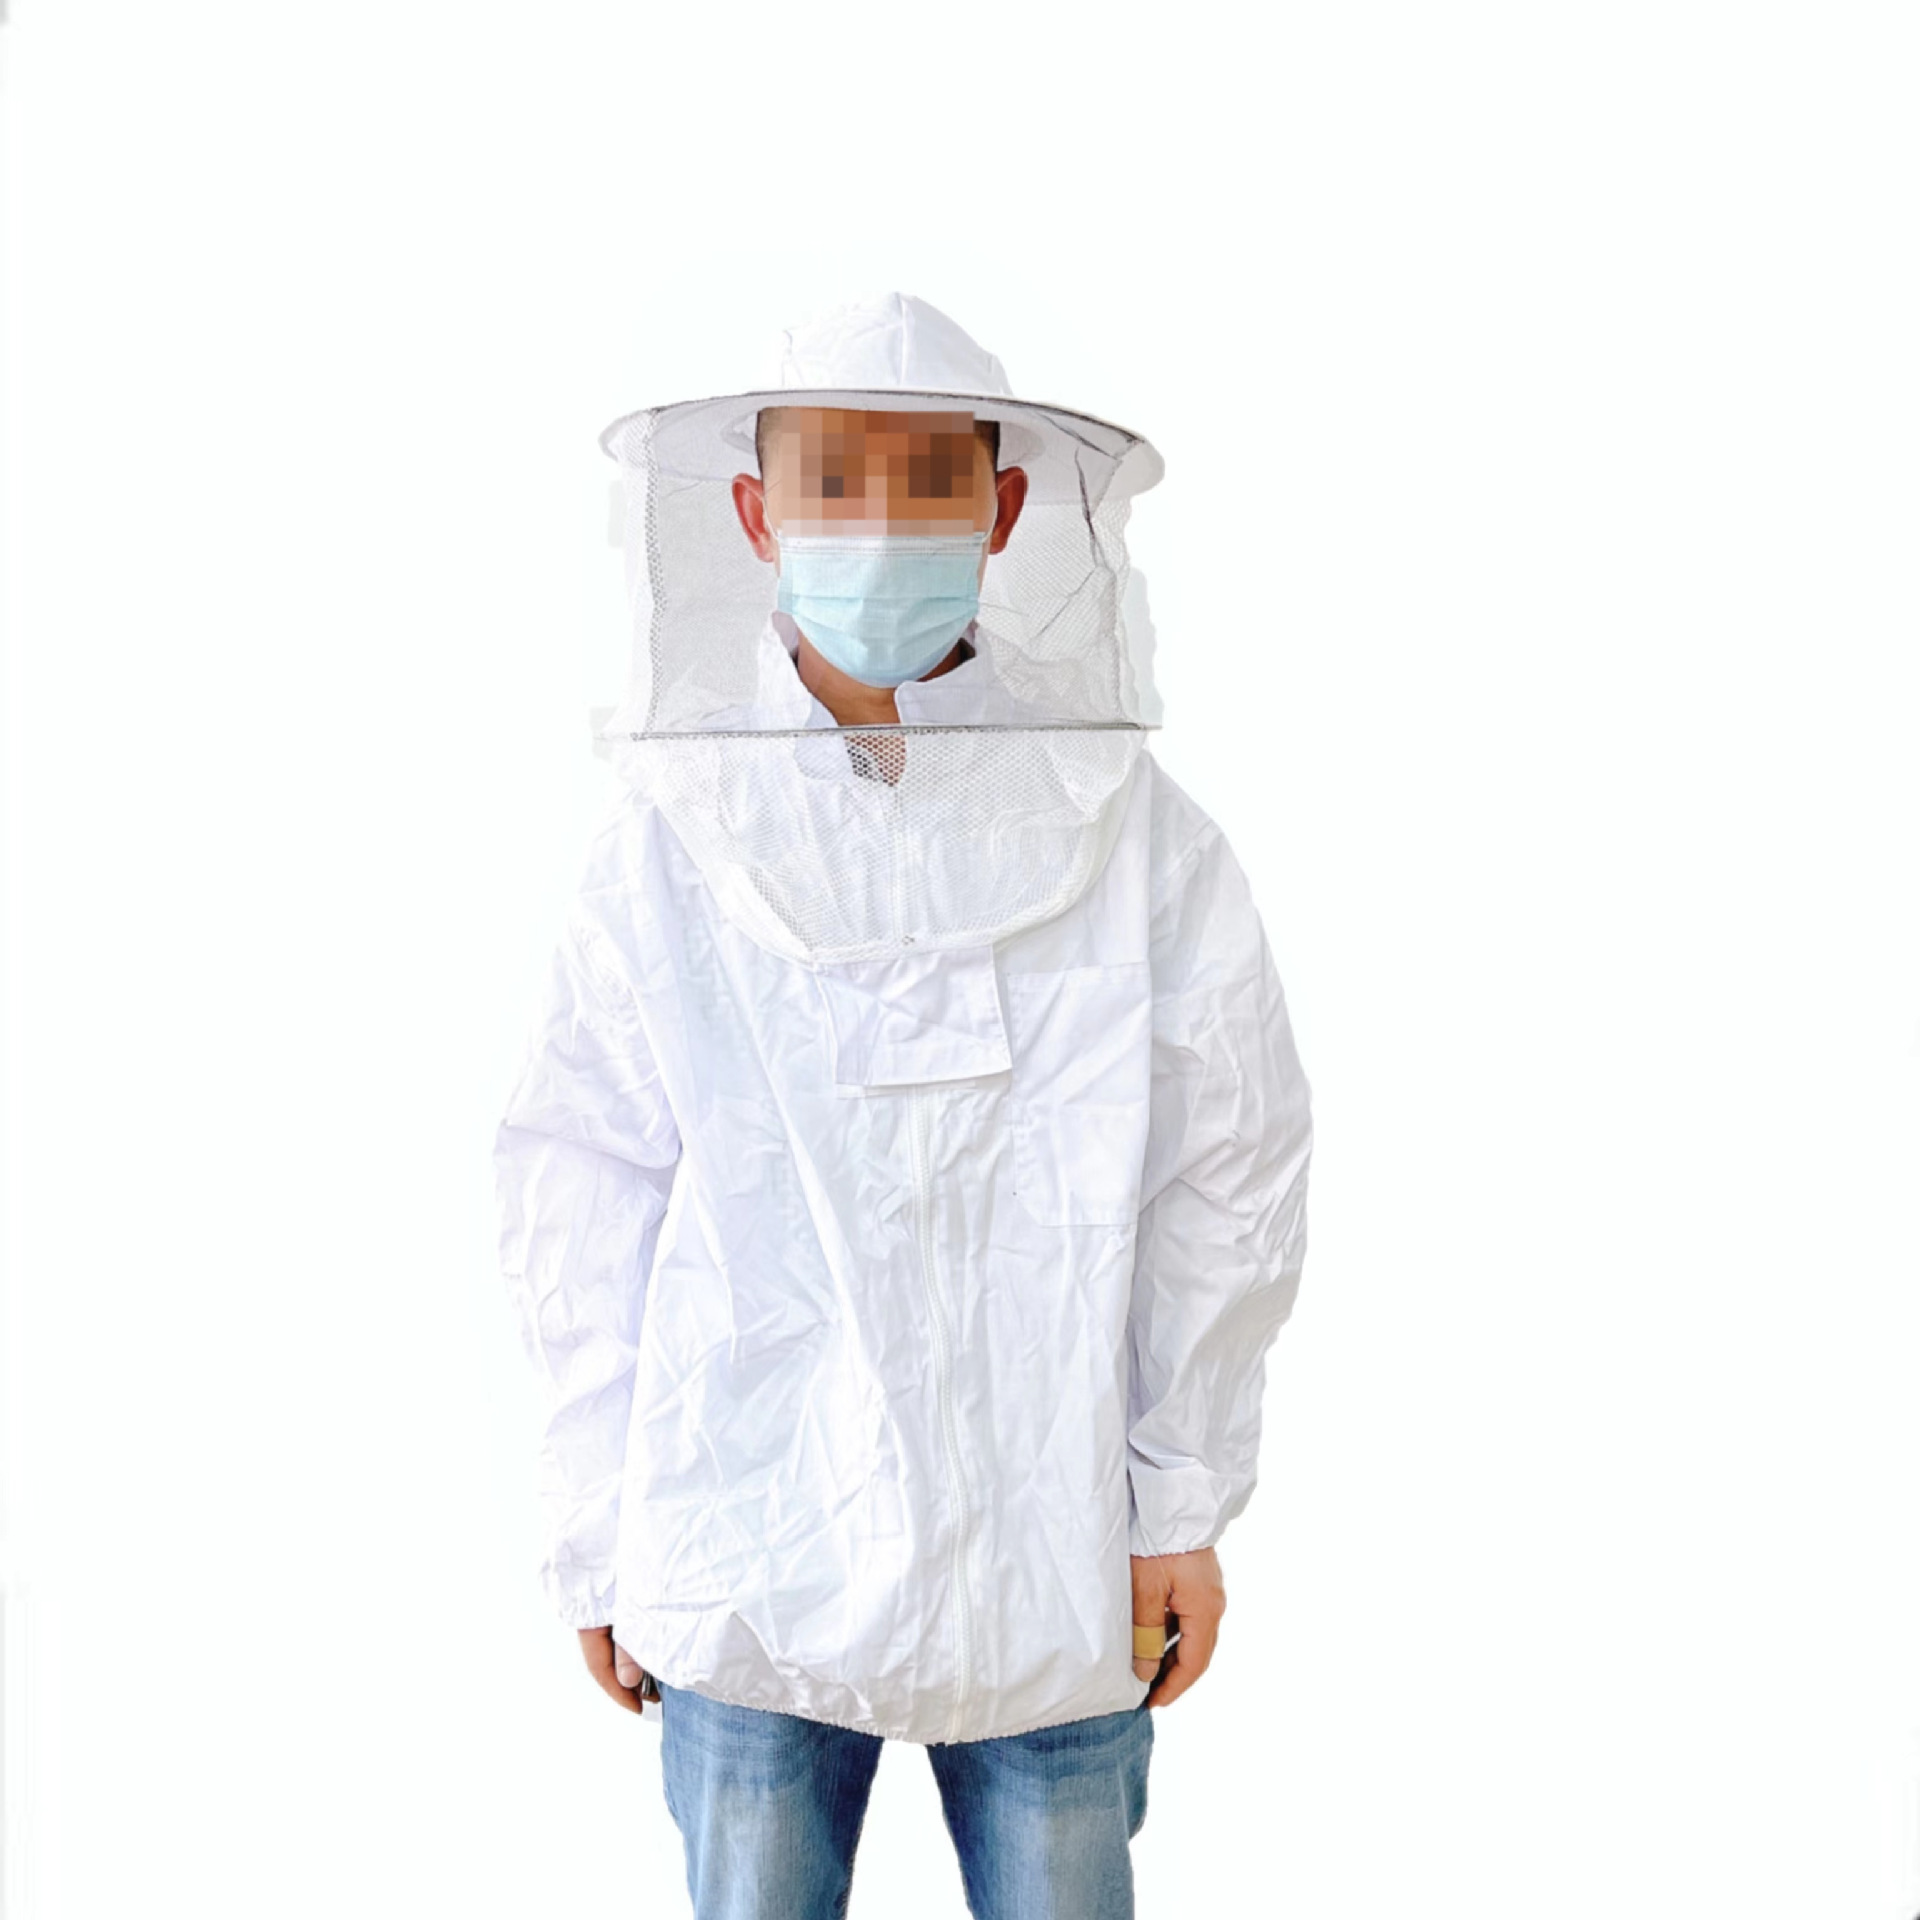 白色半身圆帽开胸拉链防蜂服 透气面网 养蜂工具防护系列批发出口